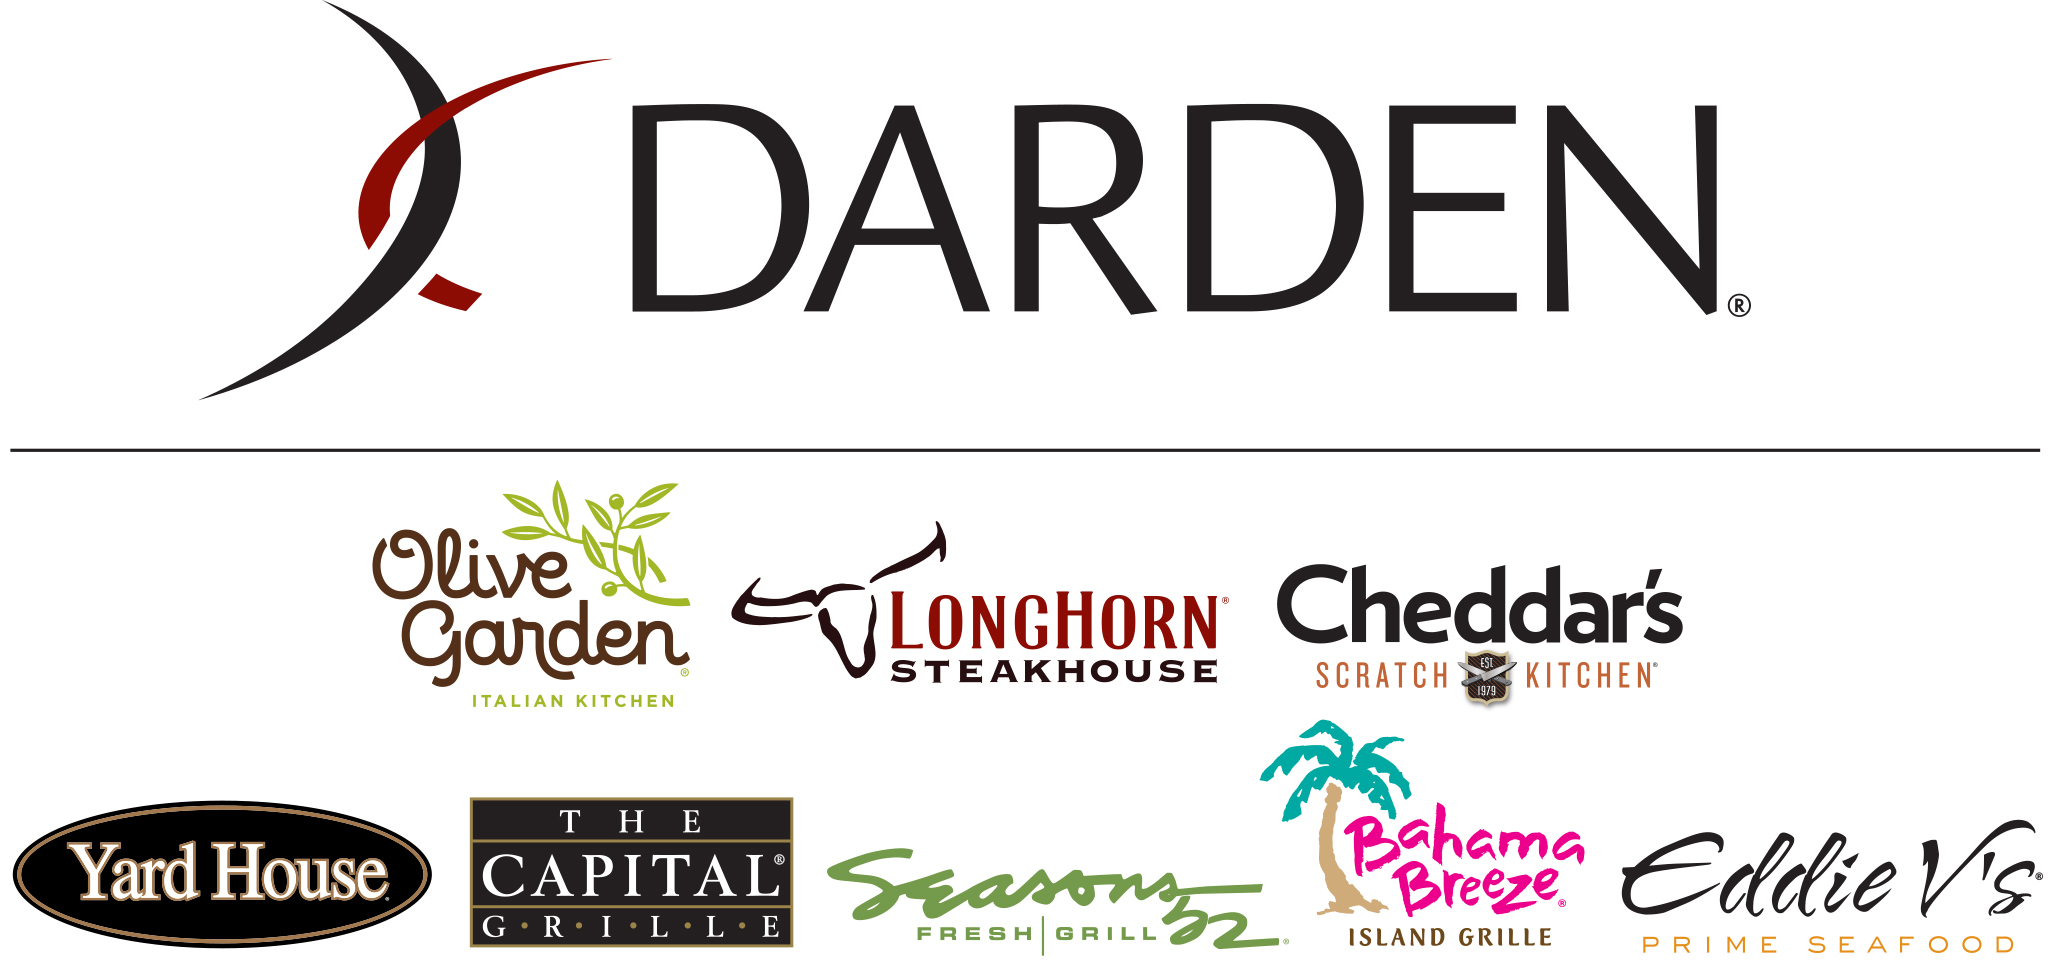 Darden Restaurants, Inc.